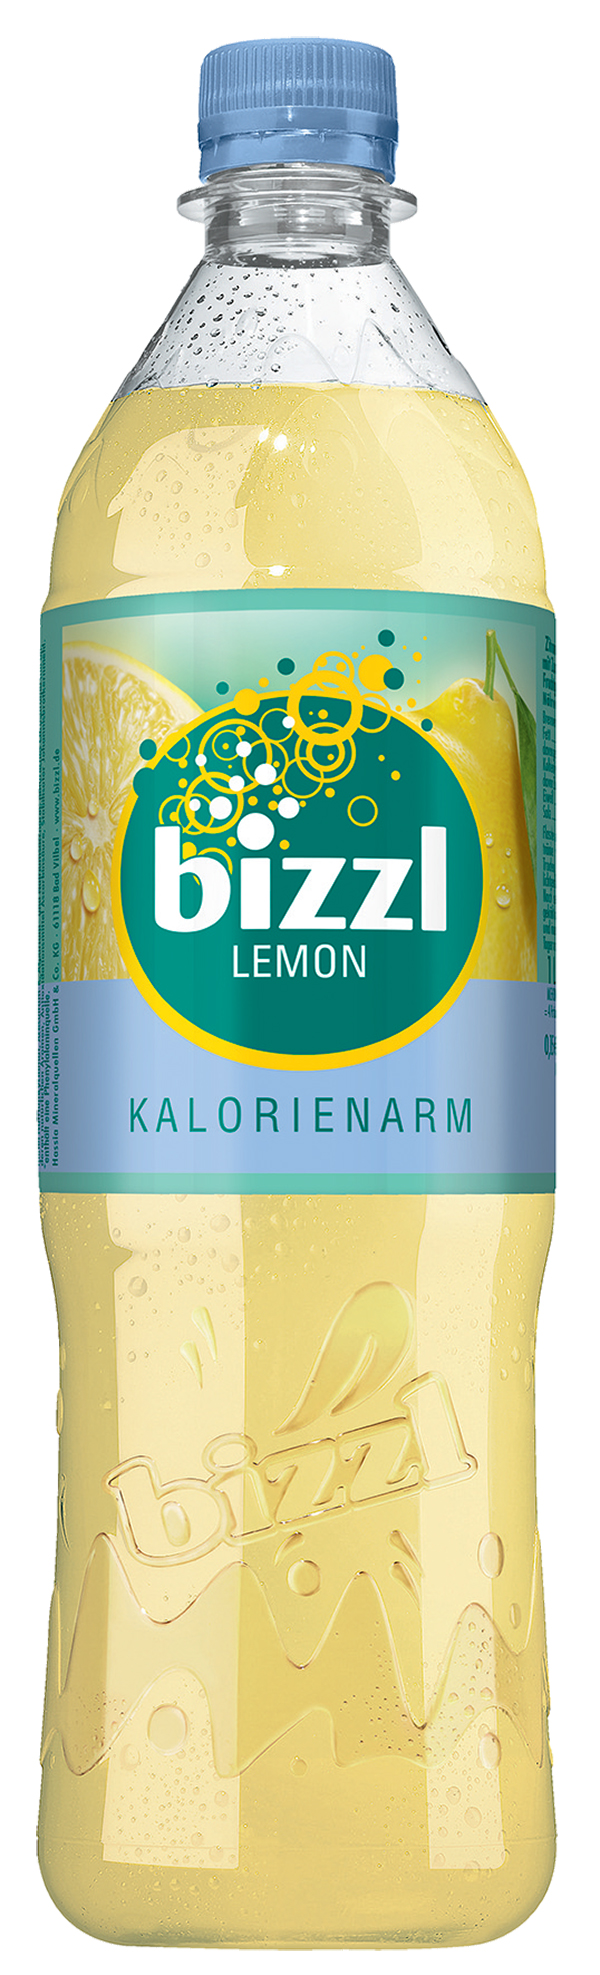 Bizzl Lemon kalorienarm 12 x 1,0 l (PET)